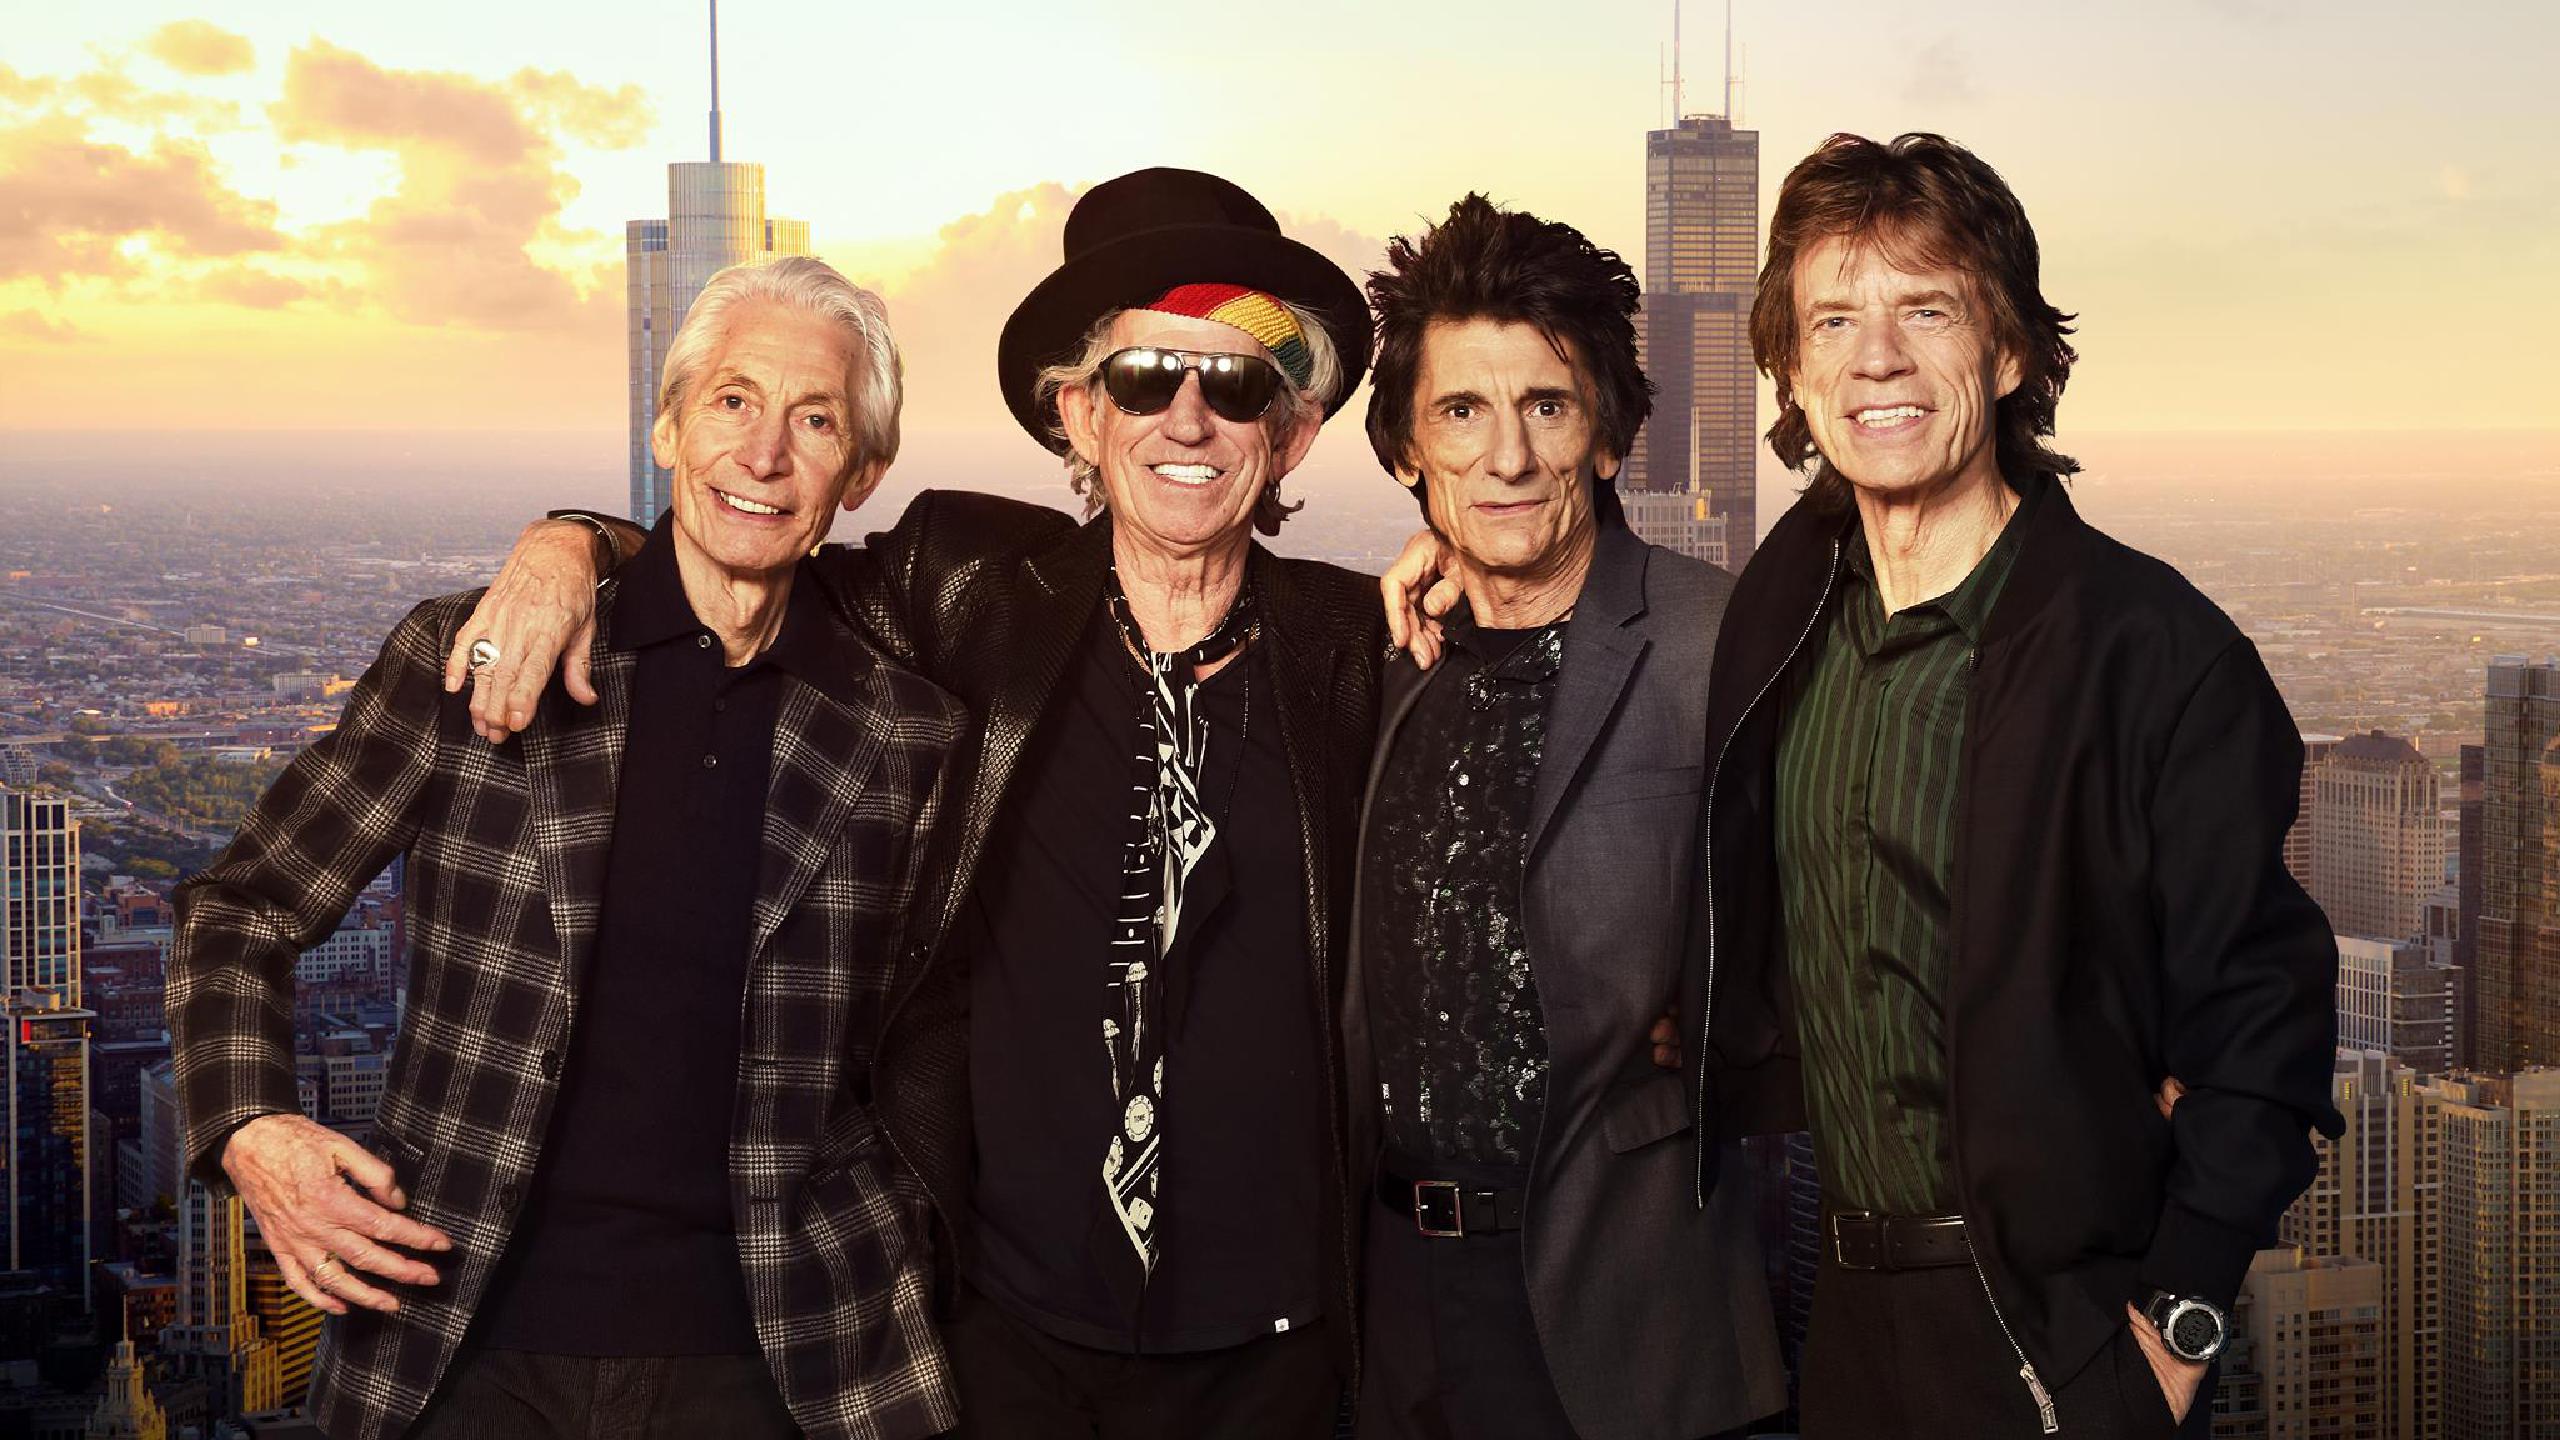 Los Rolling Stones cancelan gira norteamericana por operación de Mick Jagger. Cusica Plus.